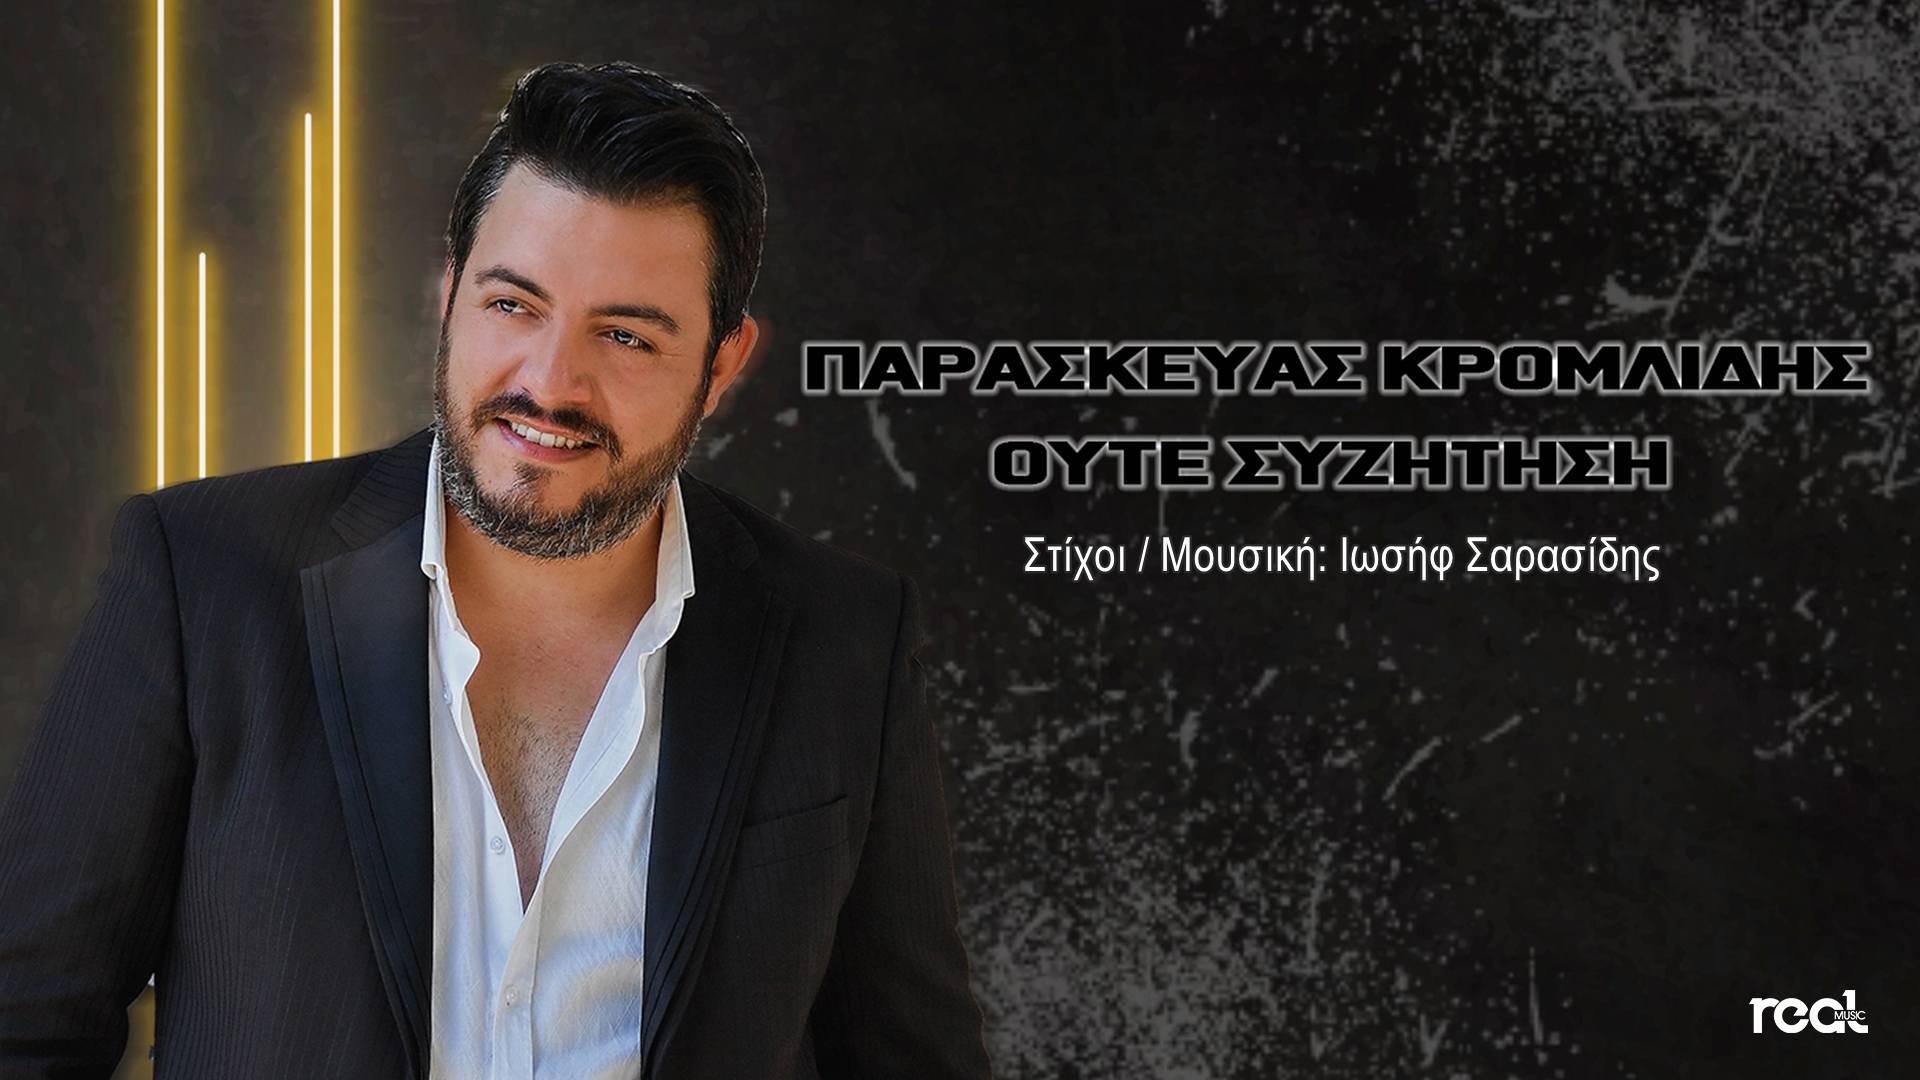 Παρασκευάς Κρομλίδης | «Ούτε συζήτηση» κυκλοφόρησε το νέο του τραγούδι